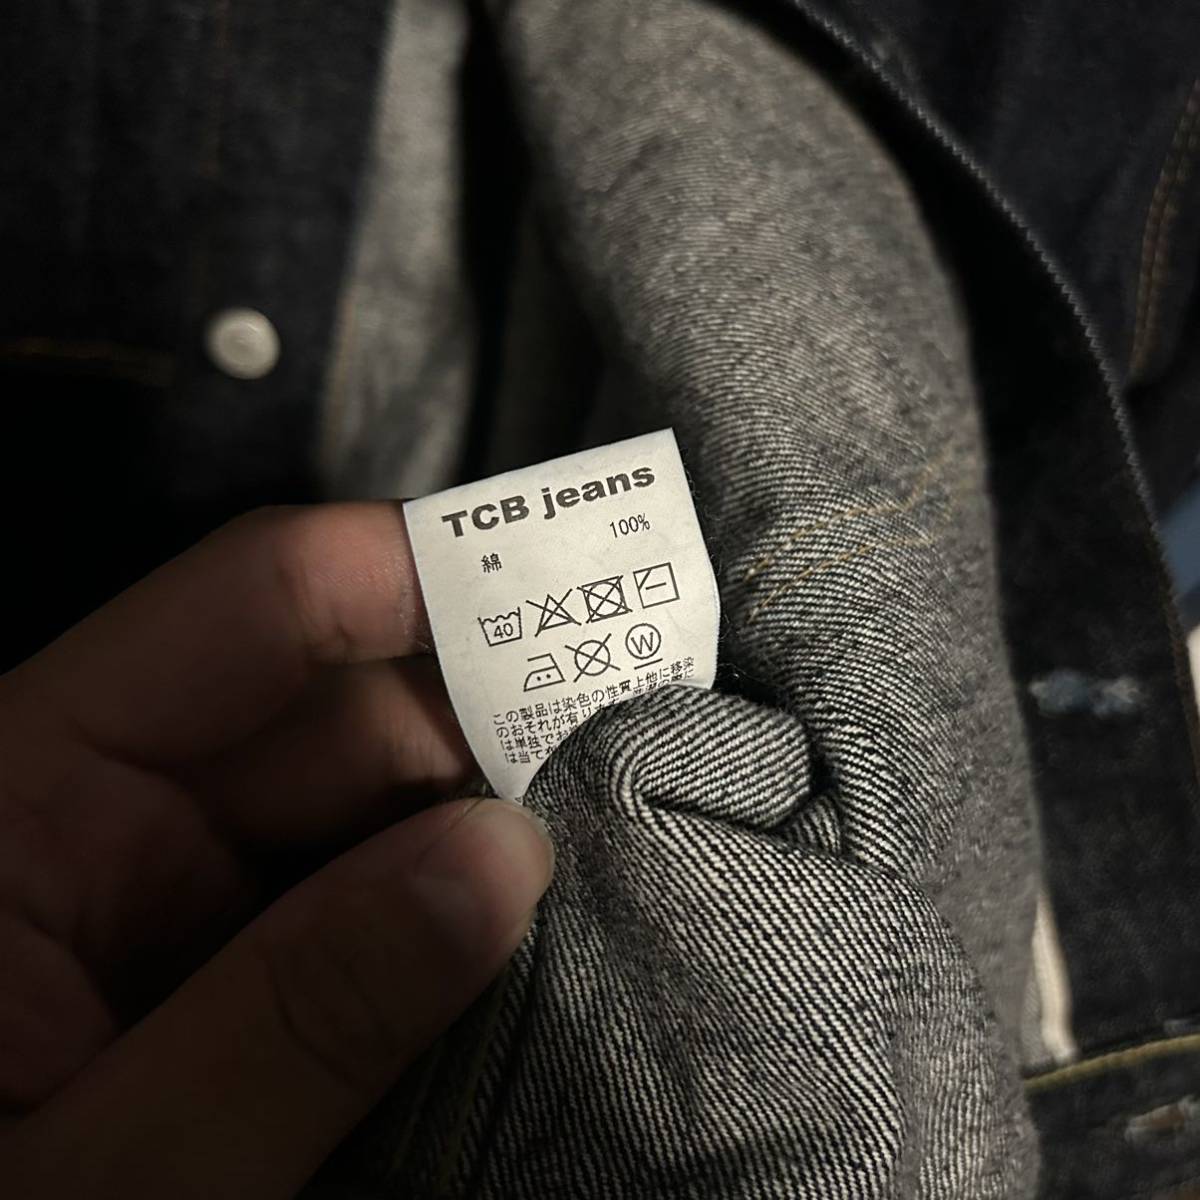 tcb jeans 30s ジャケット size48超美品 デニムジャケット Tバック 506xx 1st リーバイス ベルベル ファッション  ブランド別 り